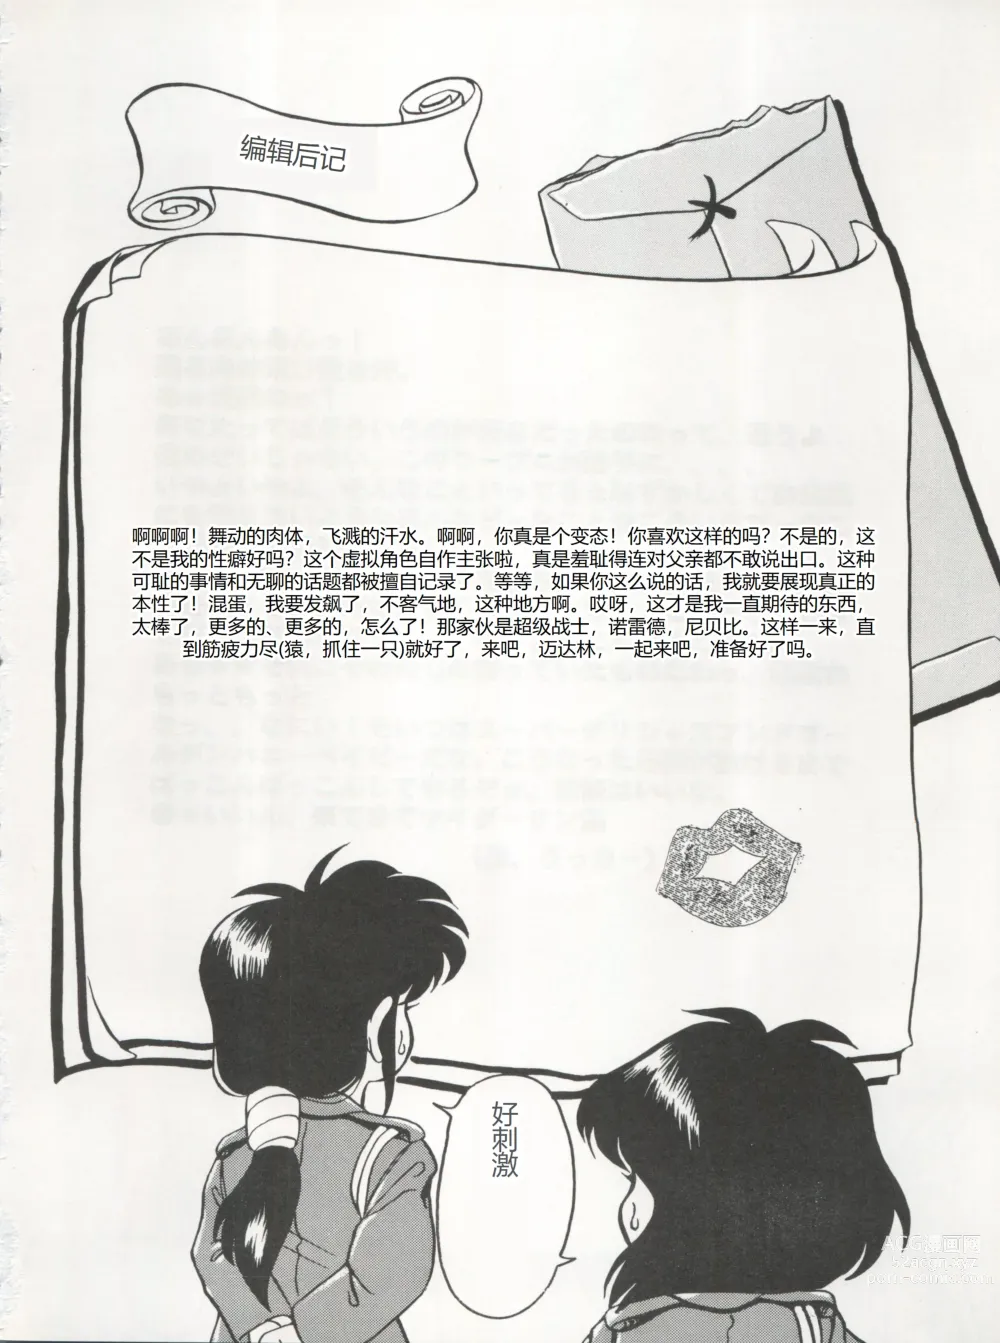 Page 46 of doujinshi 逮捕されちゃうぞ